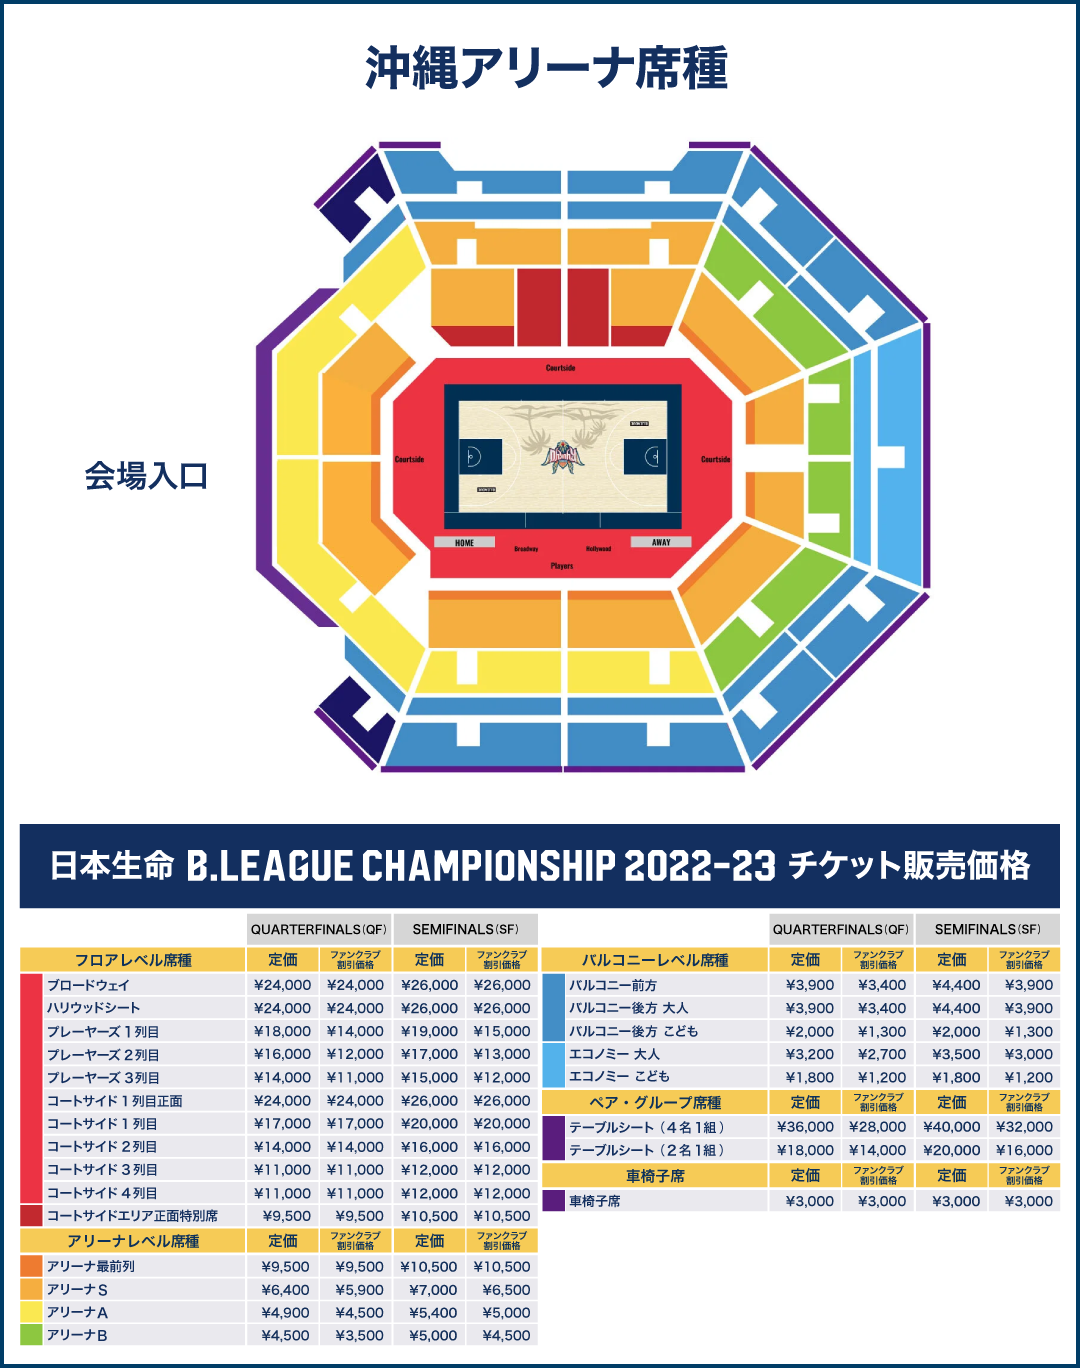 日本生命B.LEAGUE CHAMPIONSHIP 2022-23 ホーム開催概要について